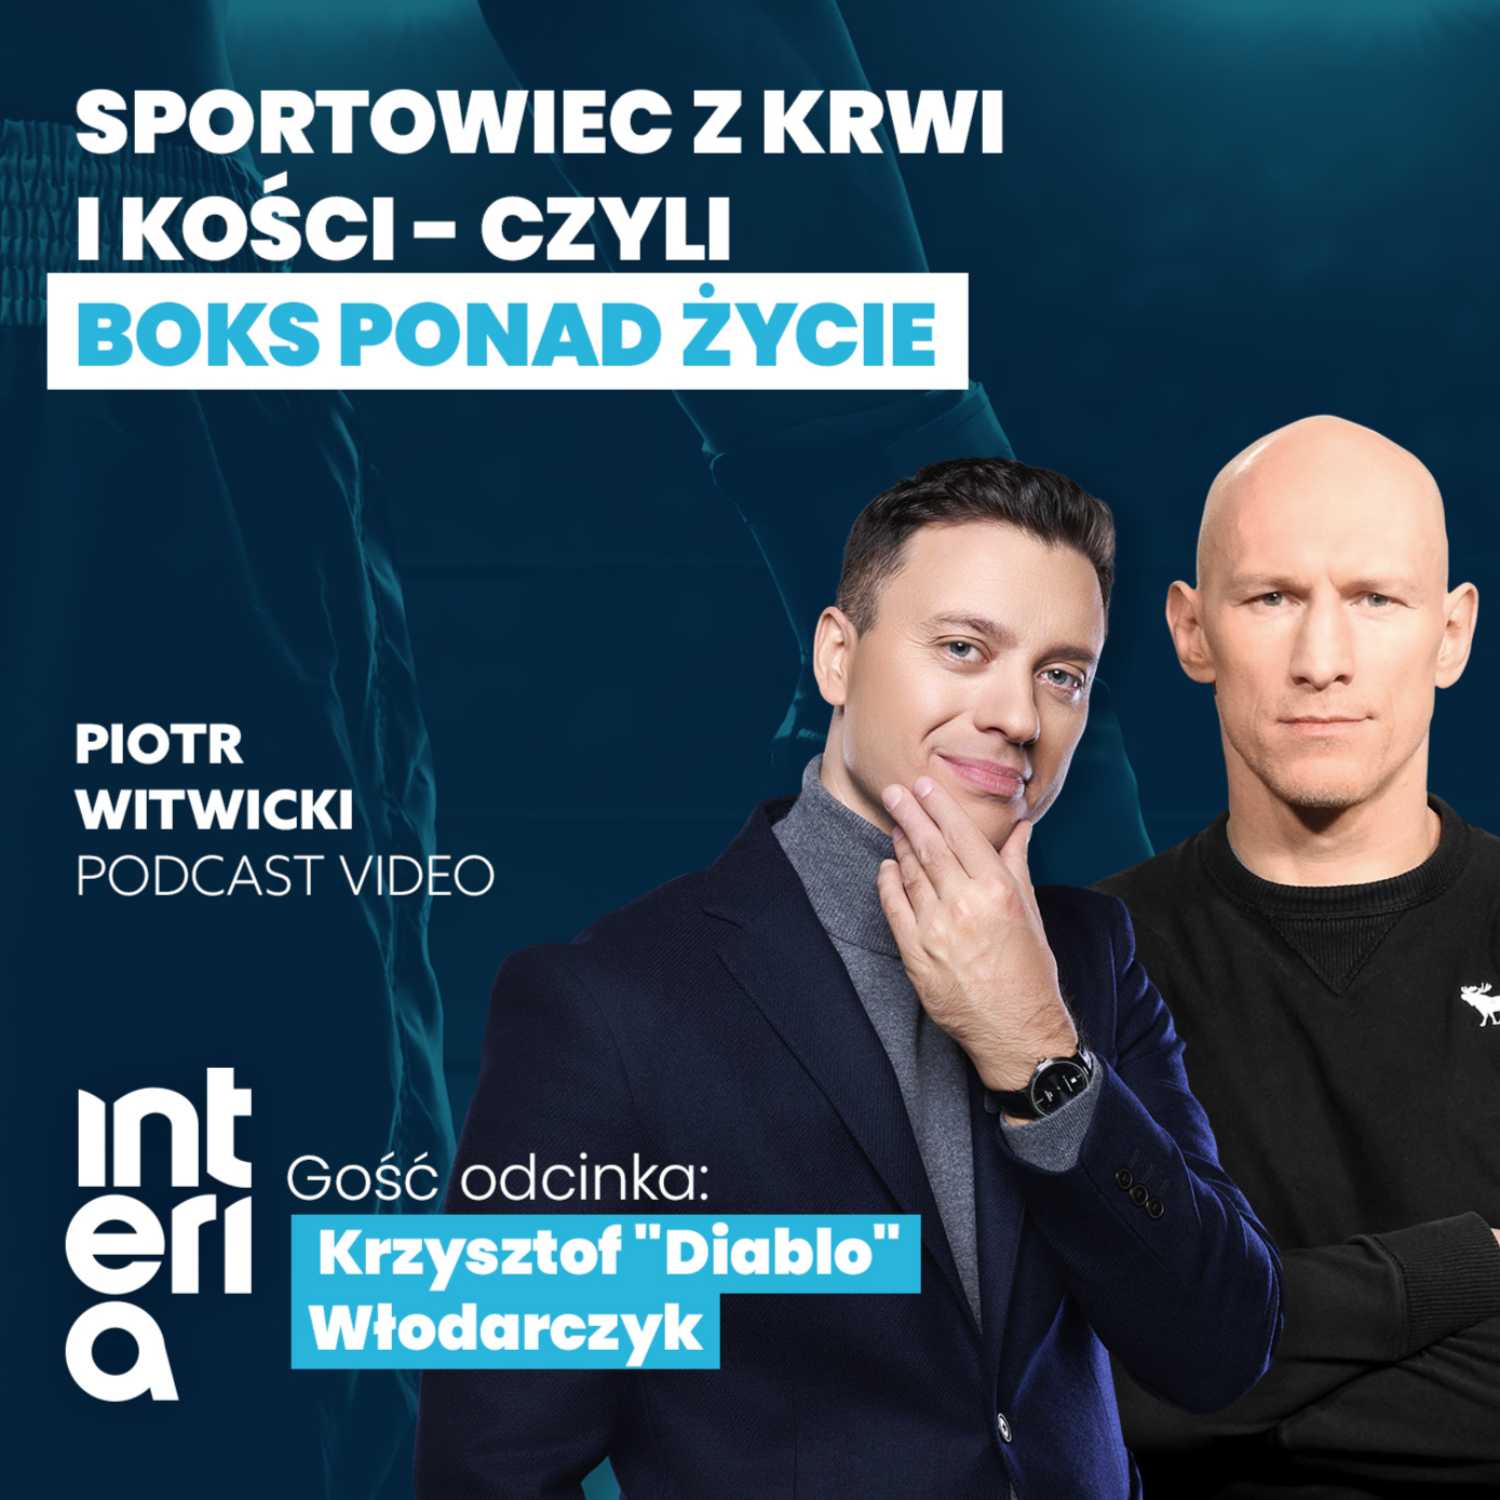 Krzysztof "Diablo" Włodarczyk - Piotr Witwicki podcast